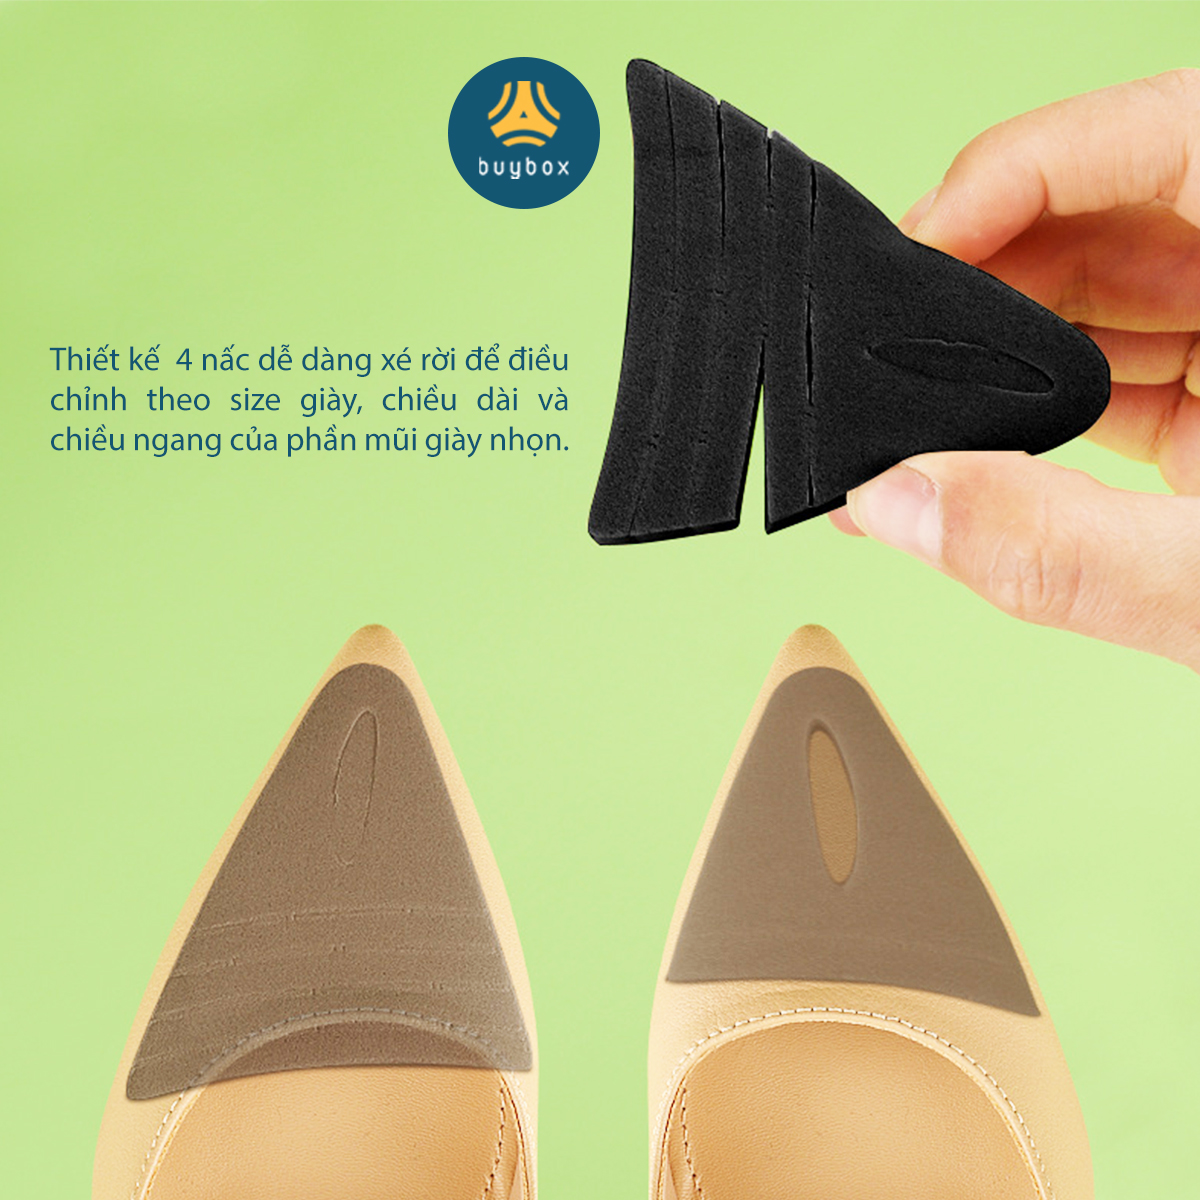 Lót giày cao gót mũi nhọn chất liệu cao su non giúp bảo vệ ngón chân không bị dồn ép về phía trước - buybox - BBPK366